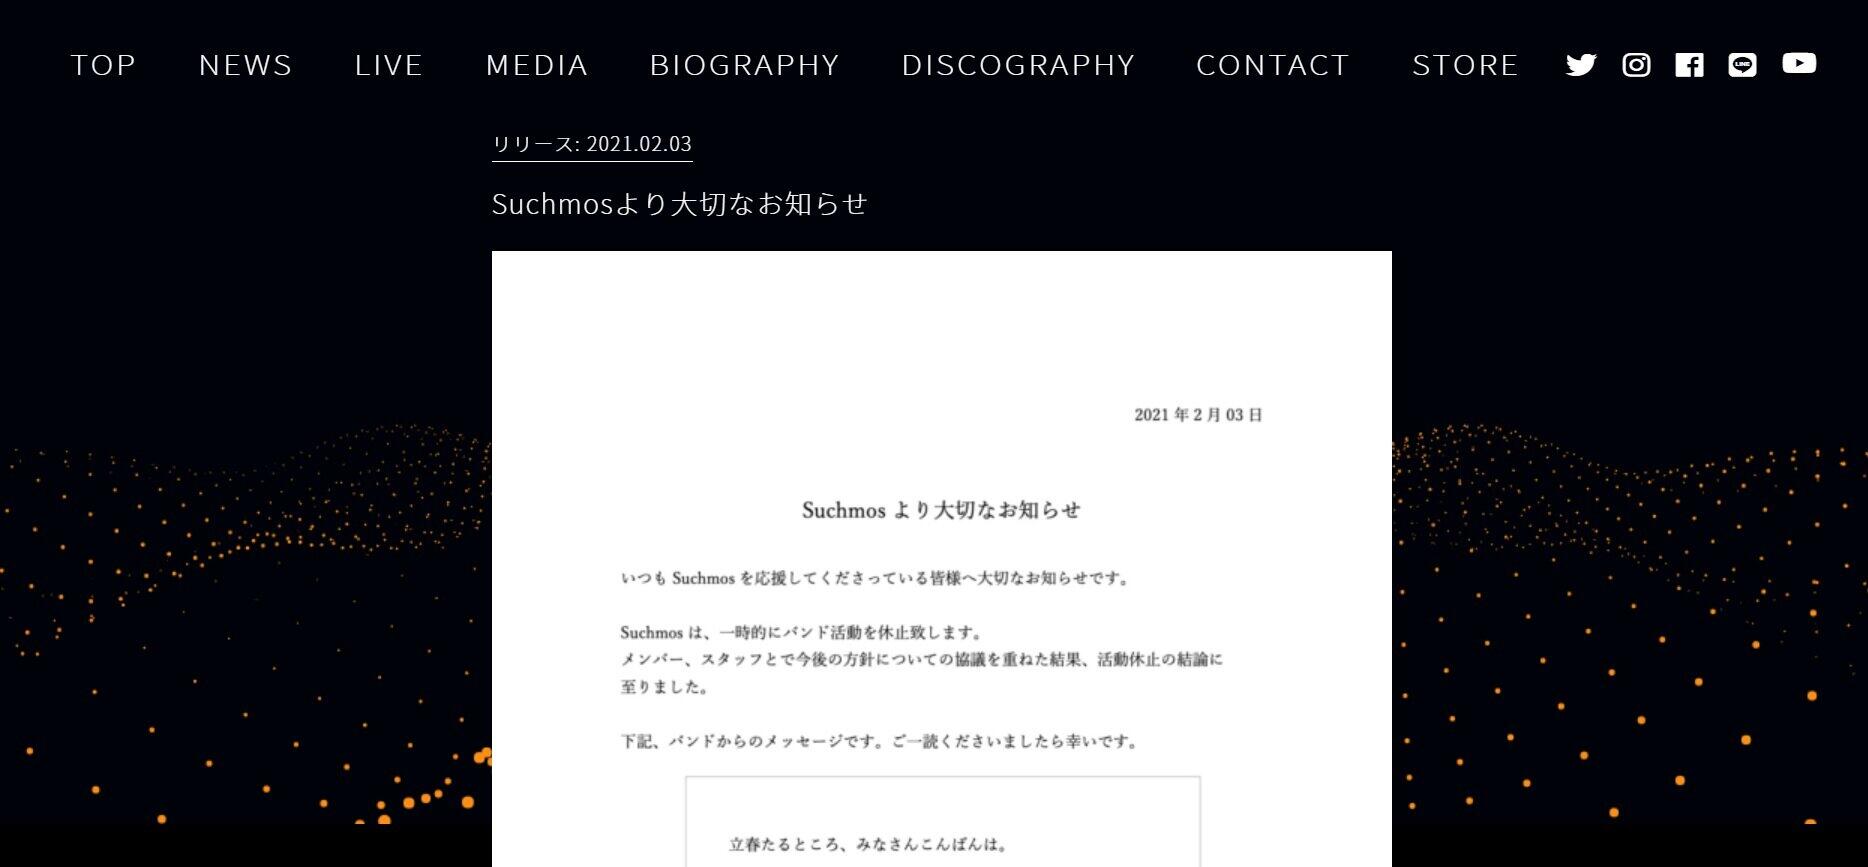 Suchmosの公式サイトで一時活動休止が発表された。